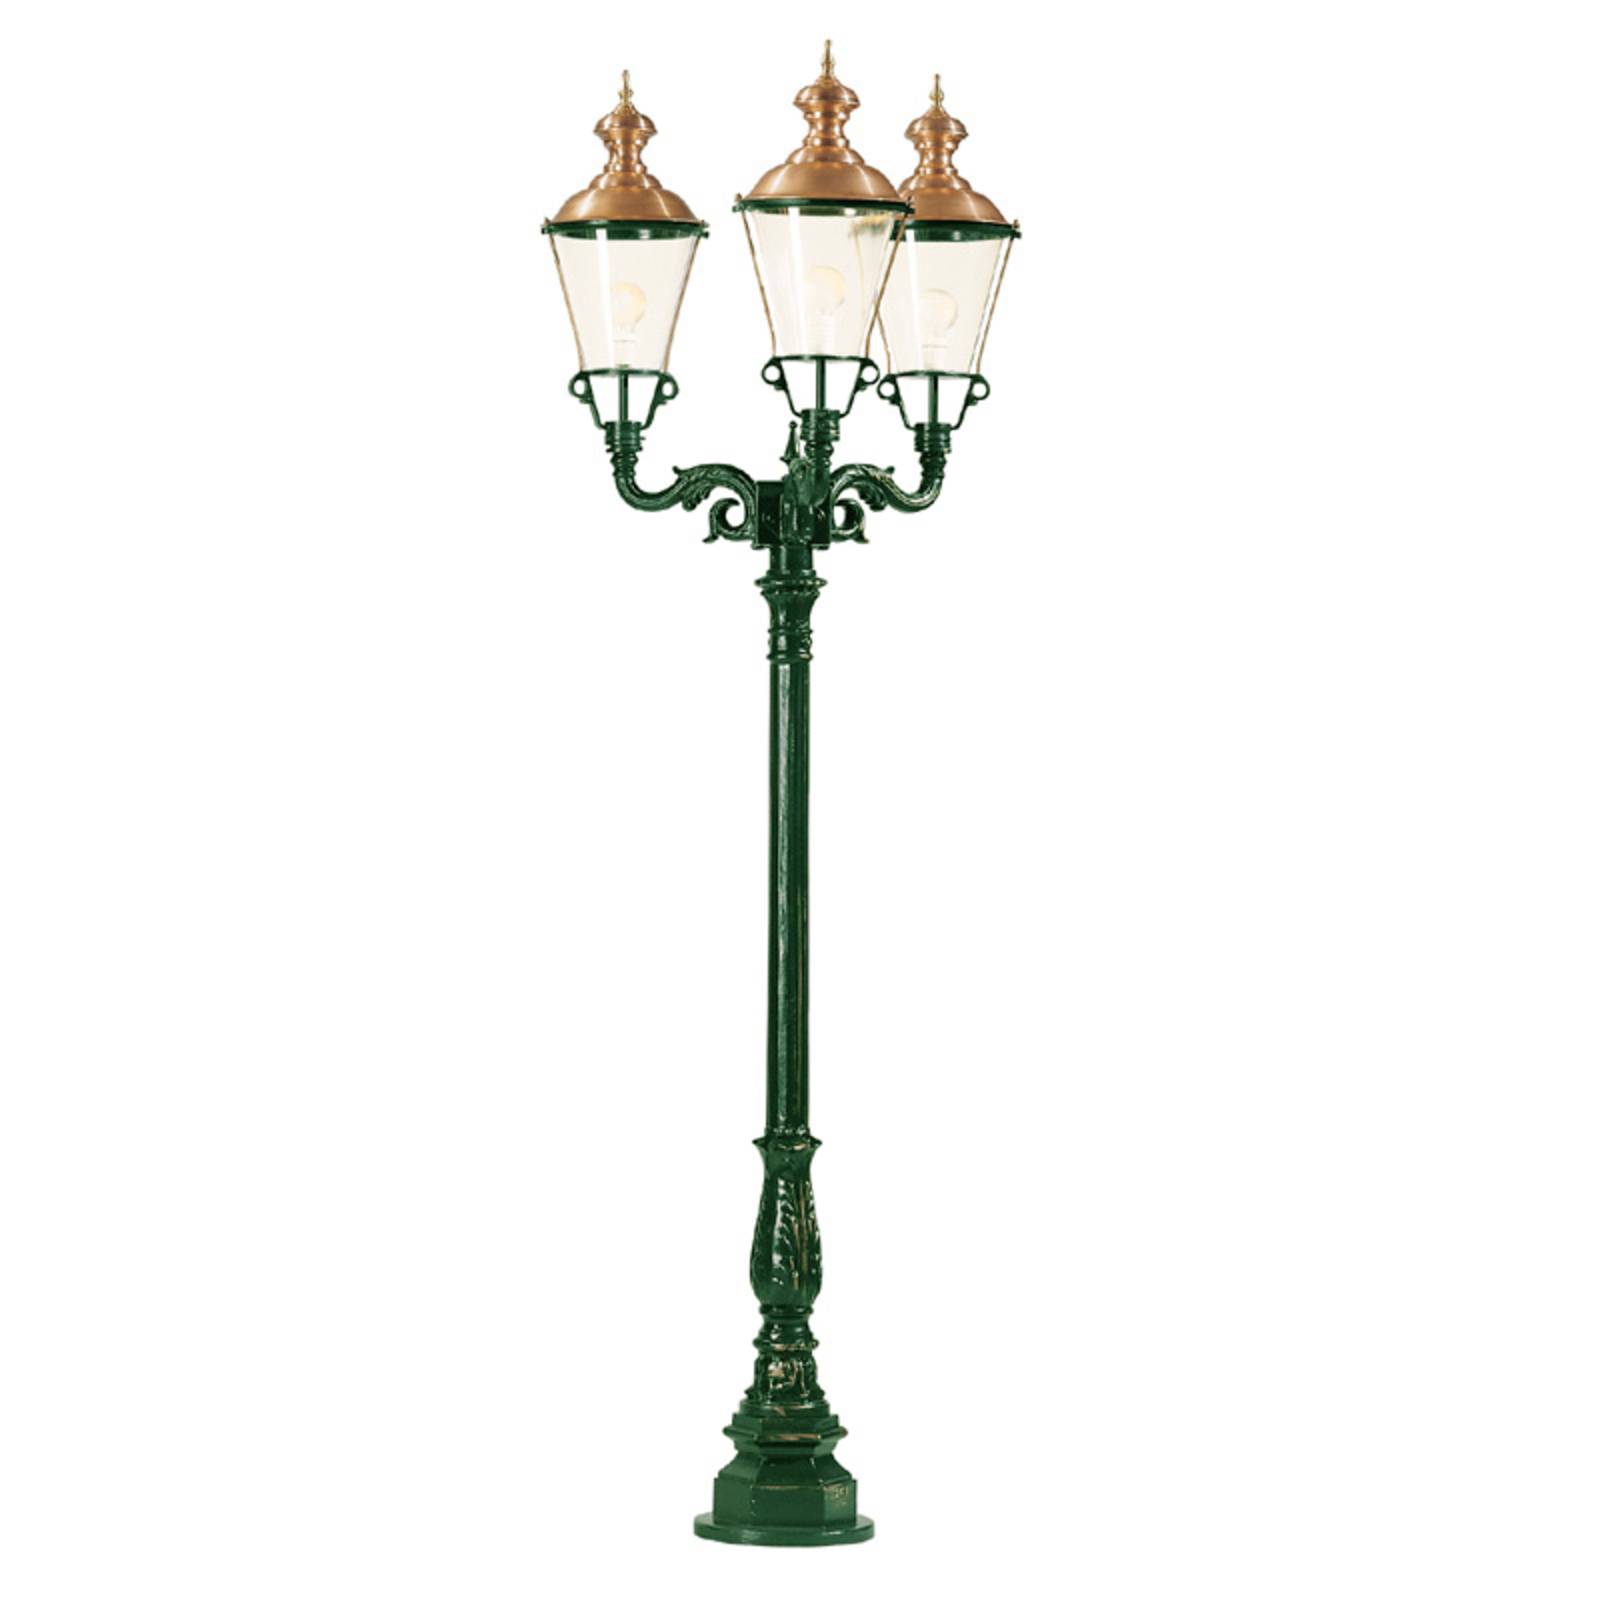 K.S. Verlichting Třízdrojová pouliční svítilna Parijs, zelená